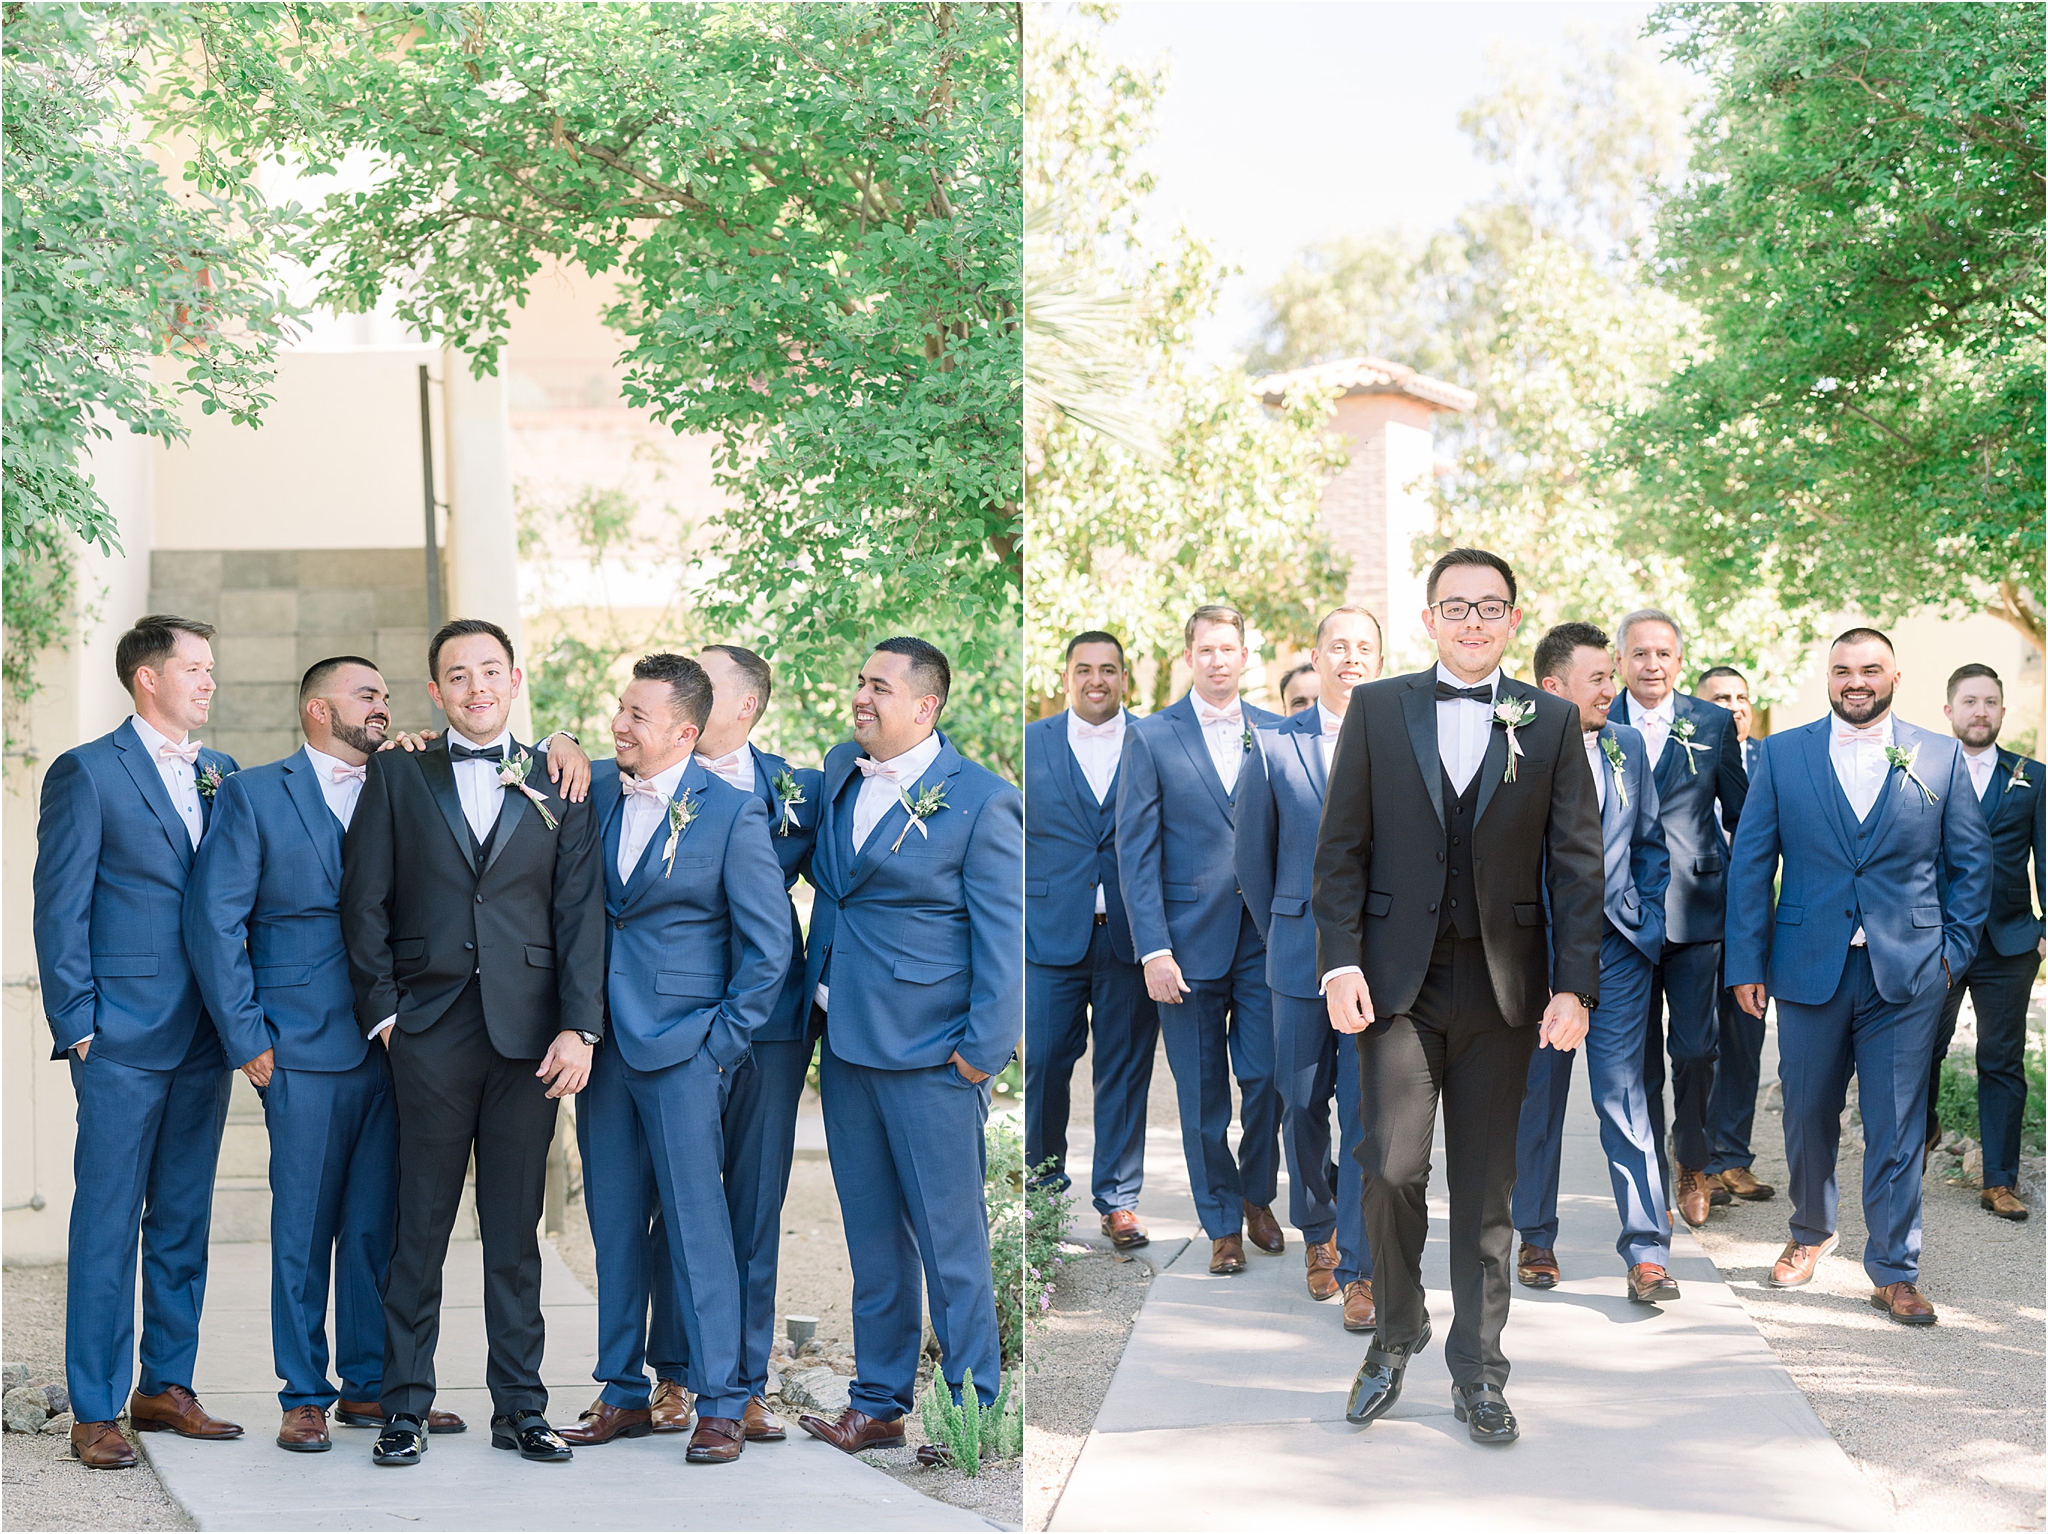 Omni Wedding Photographer | Tucson AZ | Ligia and Arturo bridal party photos | Tucson Wedding Photographer | West End Photography